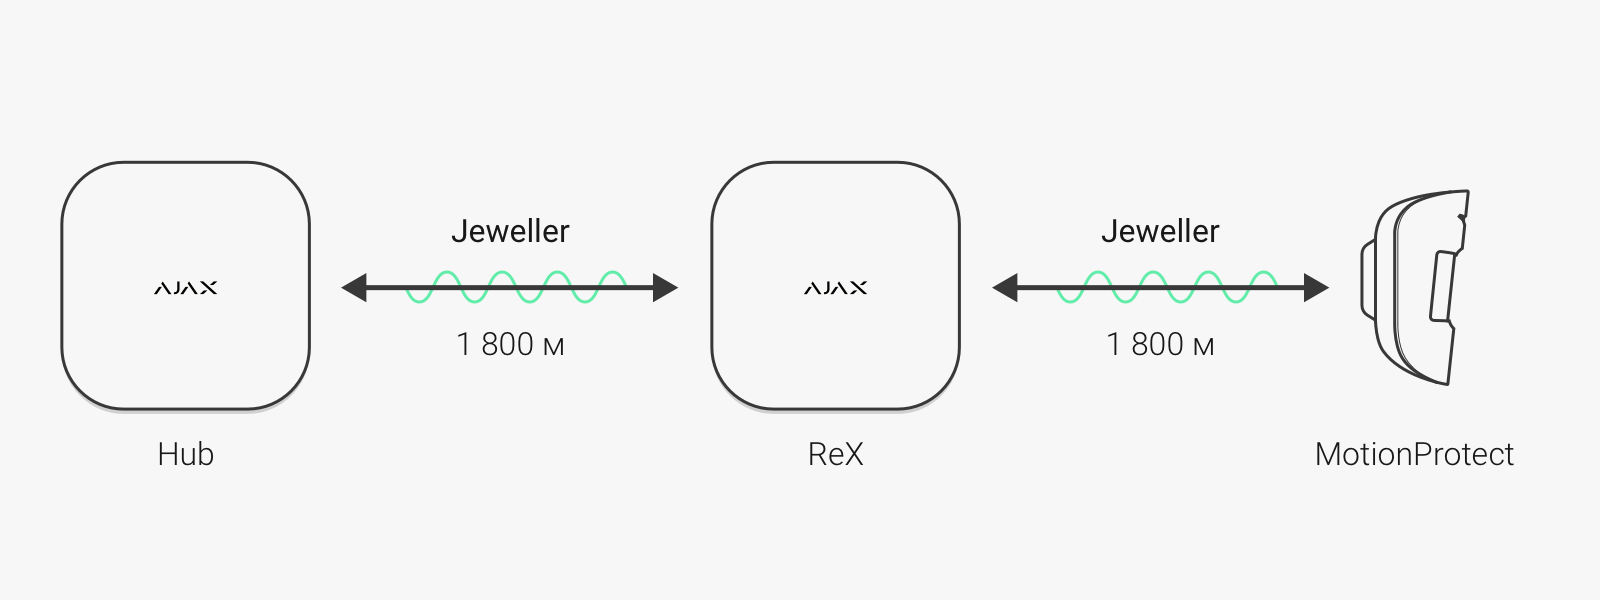 Ajax ReX: інтелектуальний ретранслятор сигналу централі, для забезпечення безпеки великих об'єктів - Зображення 1 - Зображення 2 - Зображення 3